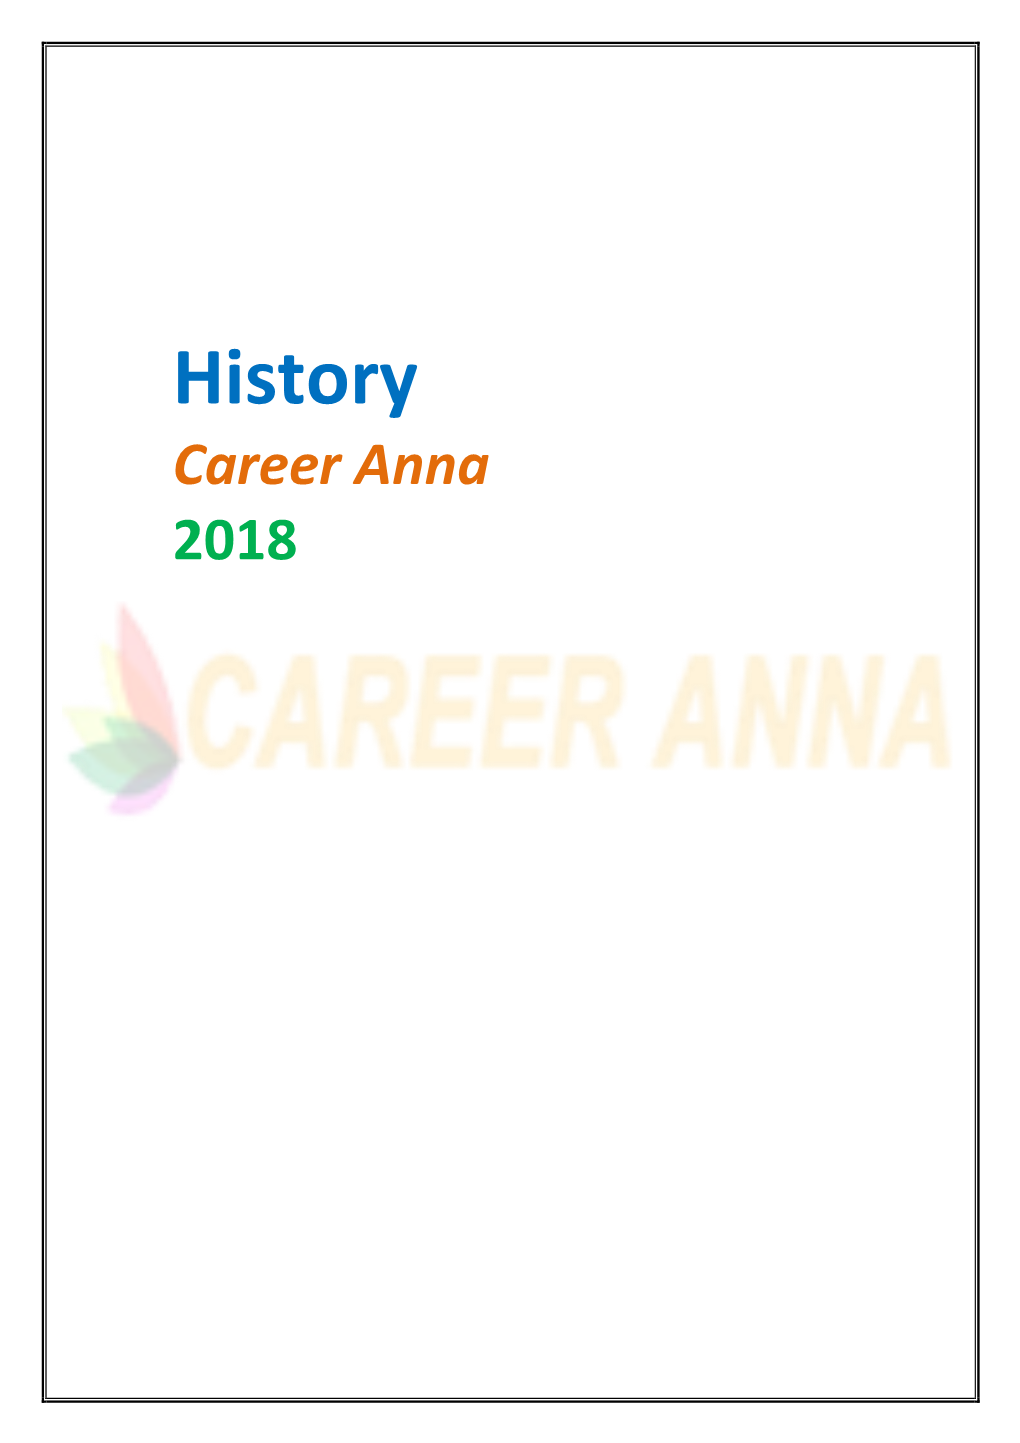 History Career Anna 2018